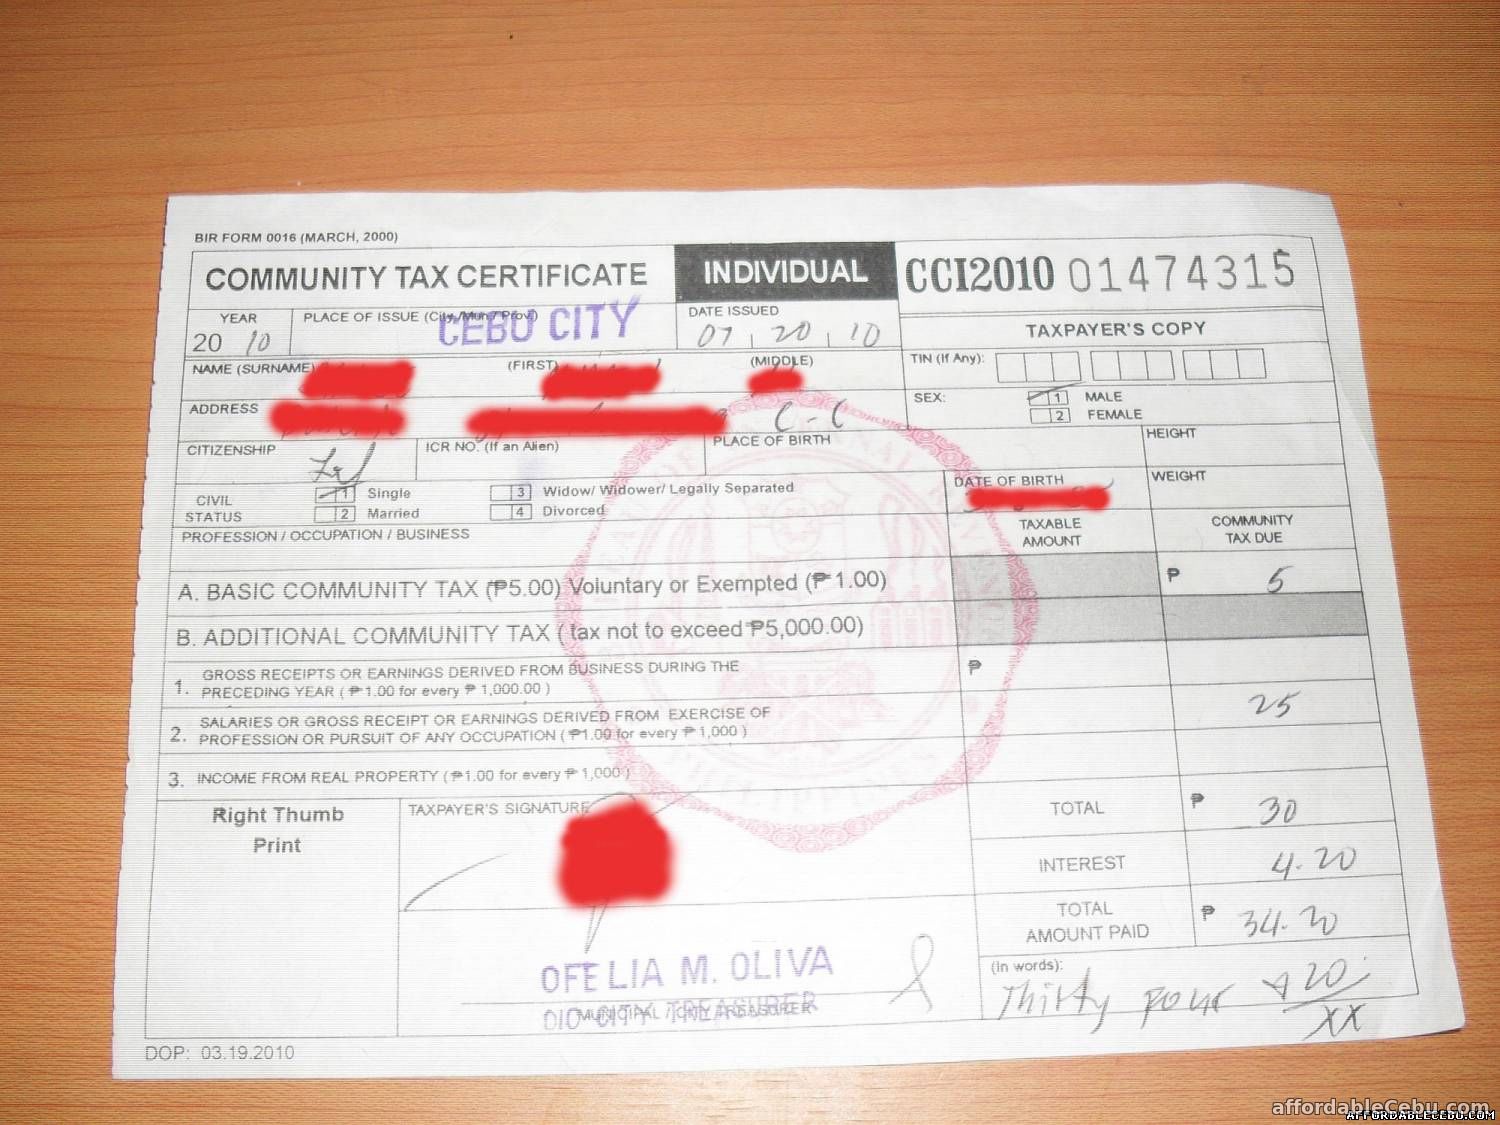 CEDULA Community Tax Certificate (CTC)